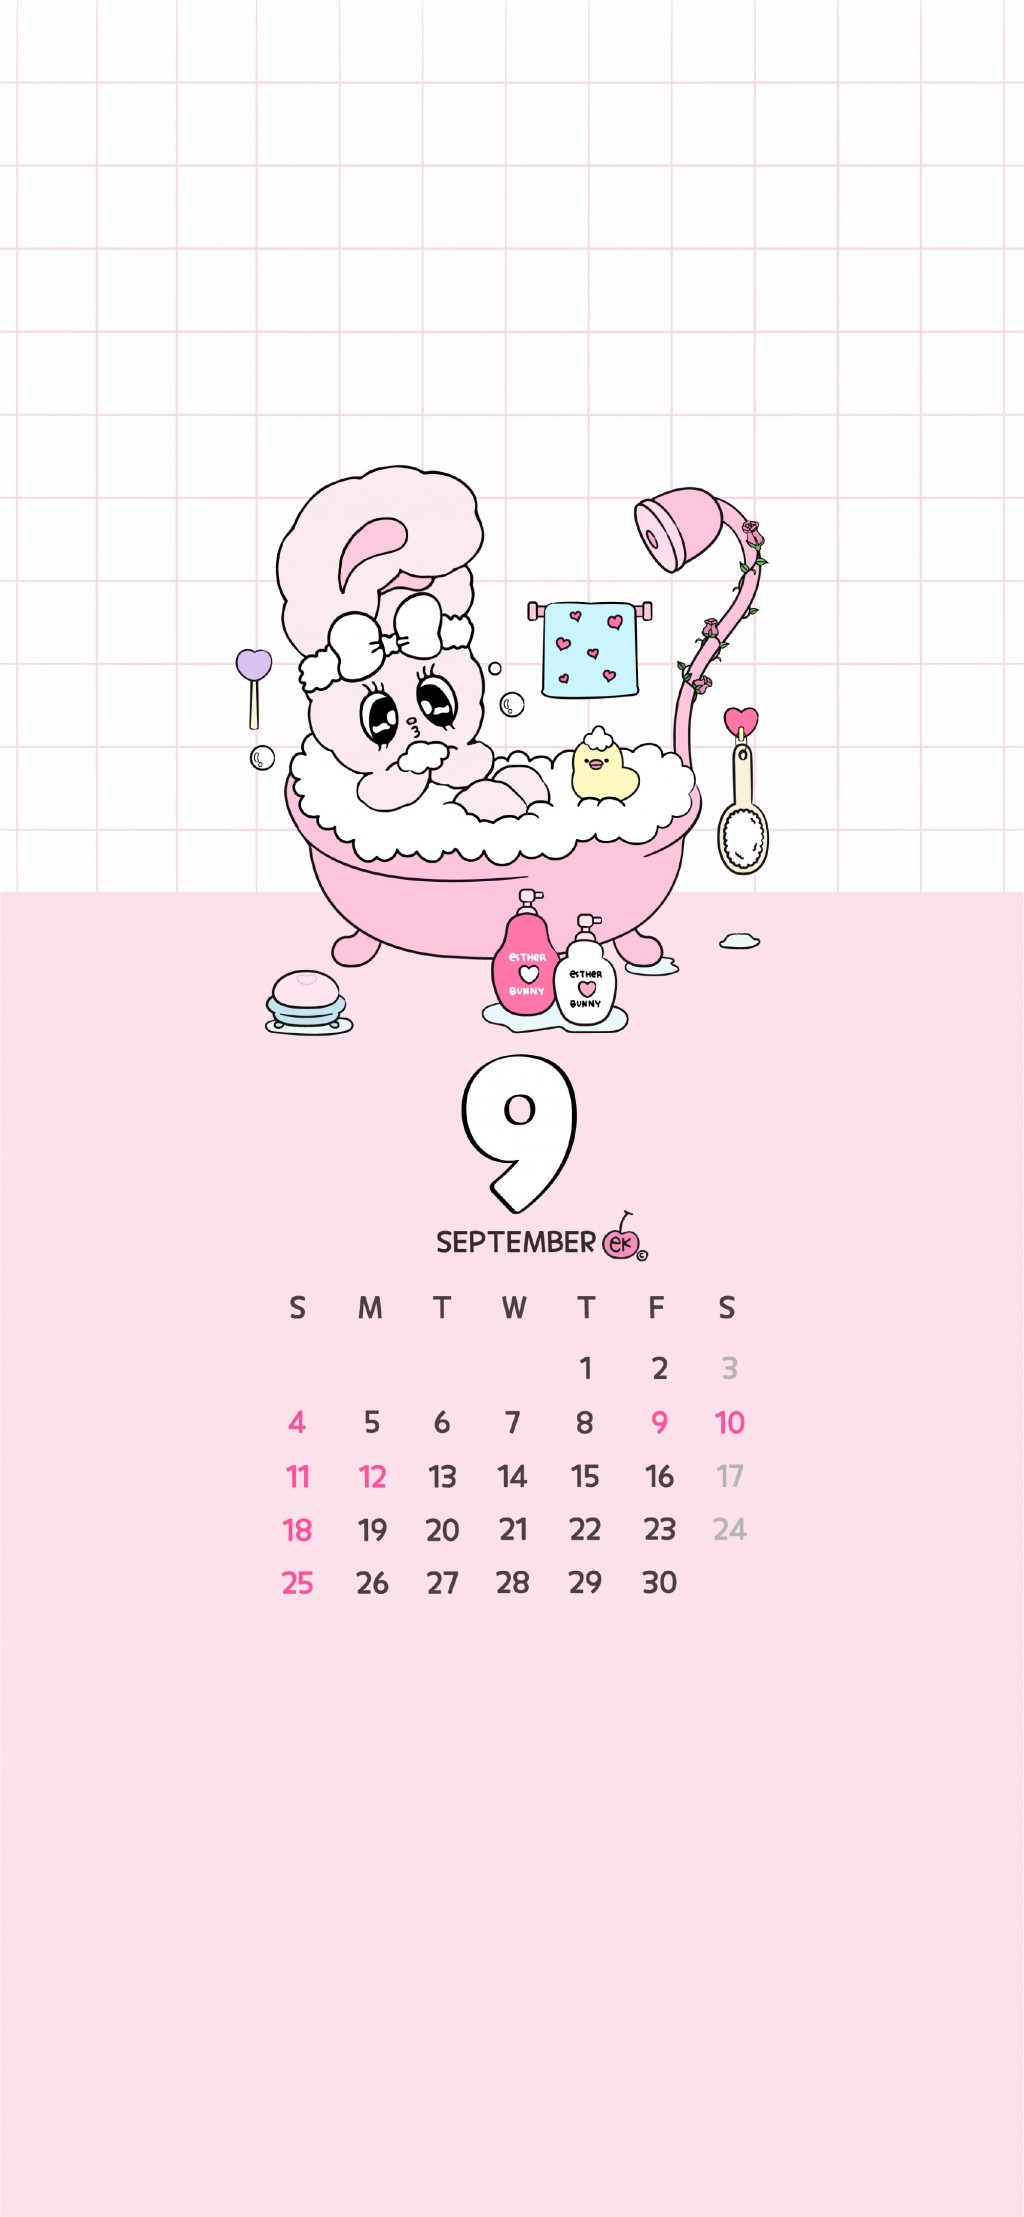 2022年9月可可爱爱简单插画日历手机壁纸